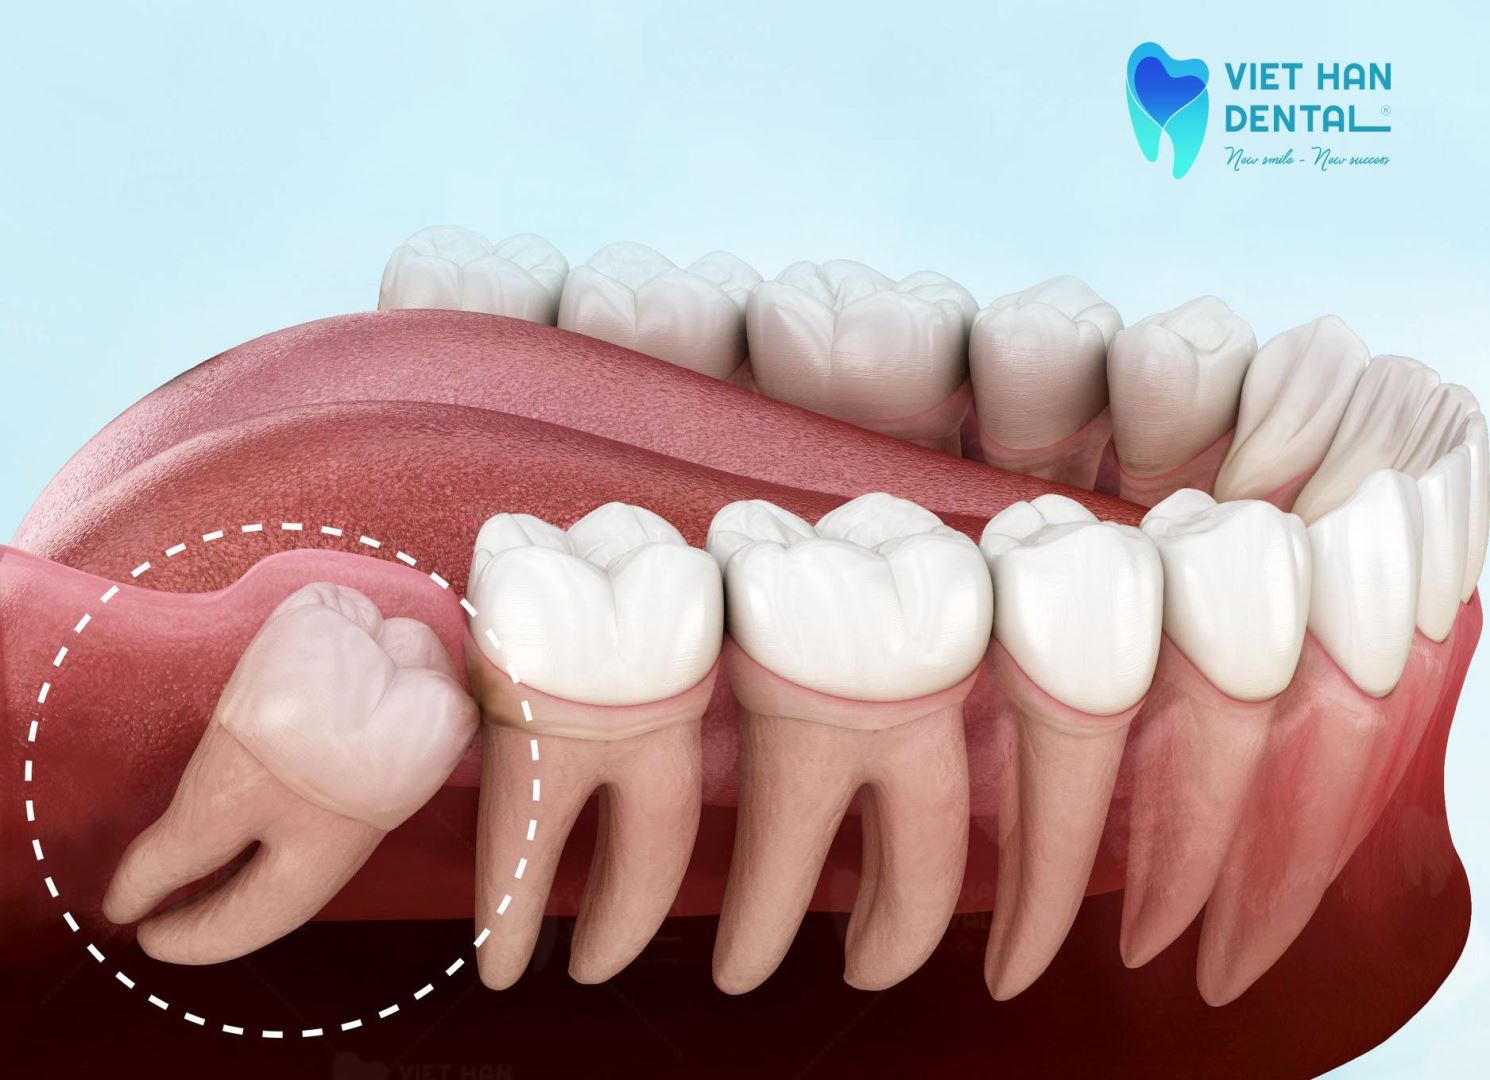 Răng sô 8 được chỉ định nhổ trường hợp niềng cần nhổ răng 